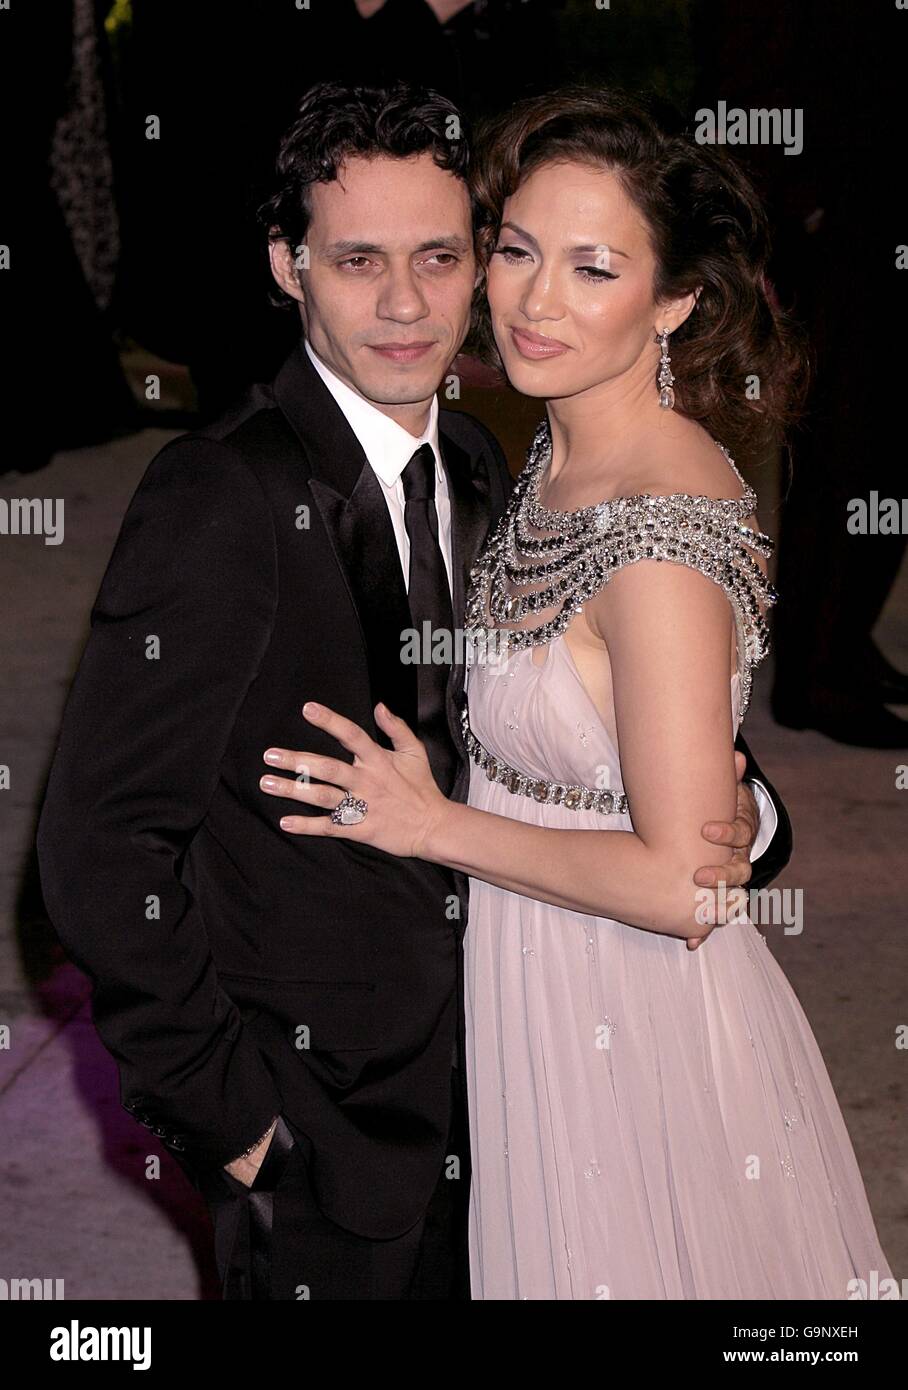 Marc Anthony et Jennifer Lopez arrivent pour la Vanity Fair Party annuelle au Mortons Restaurant, Los Angeles. Banque D'Images